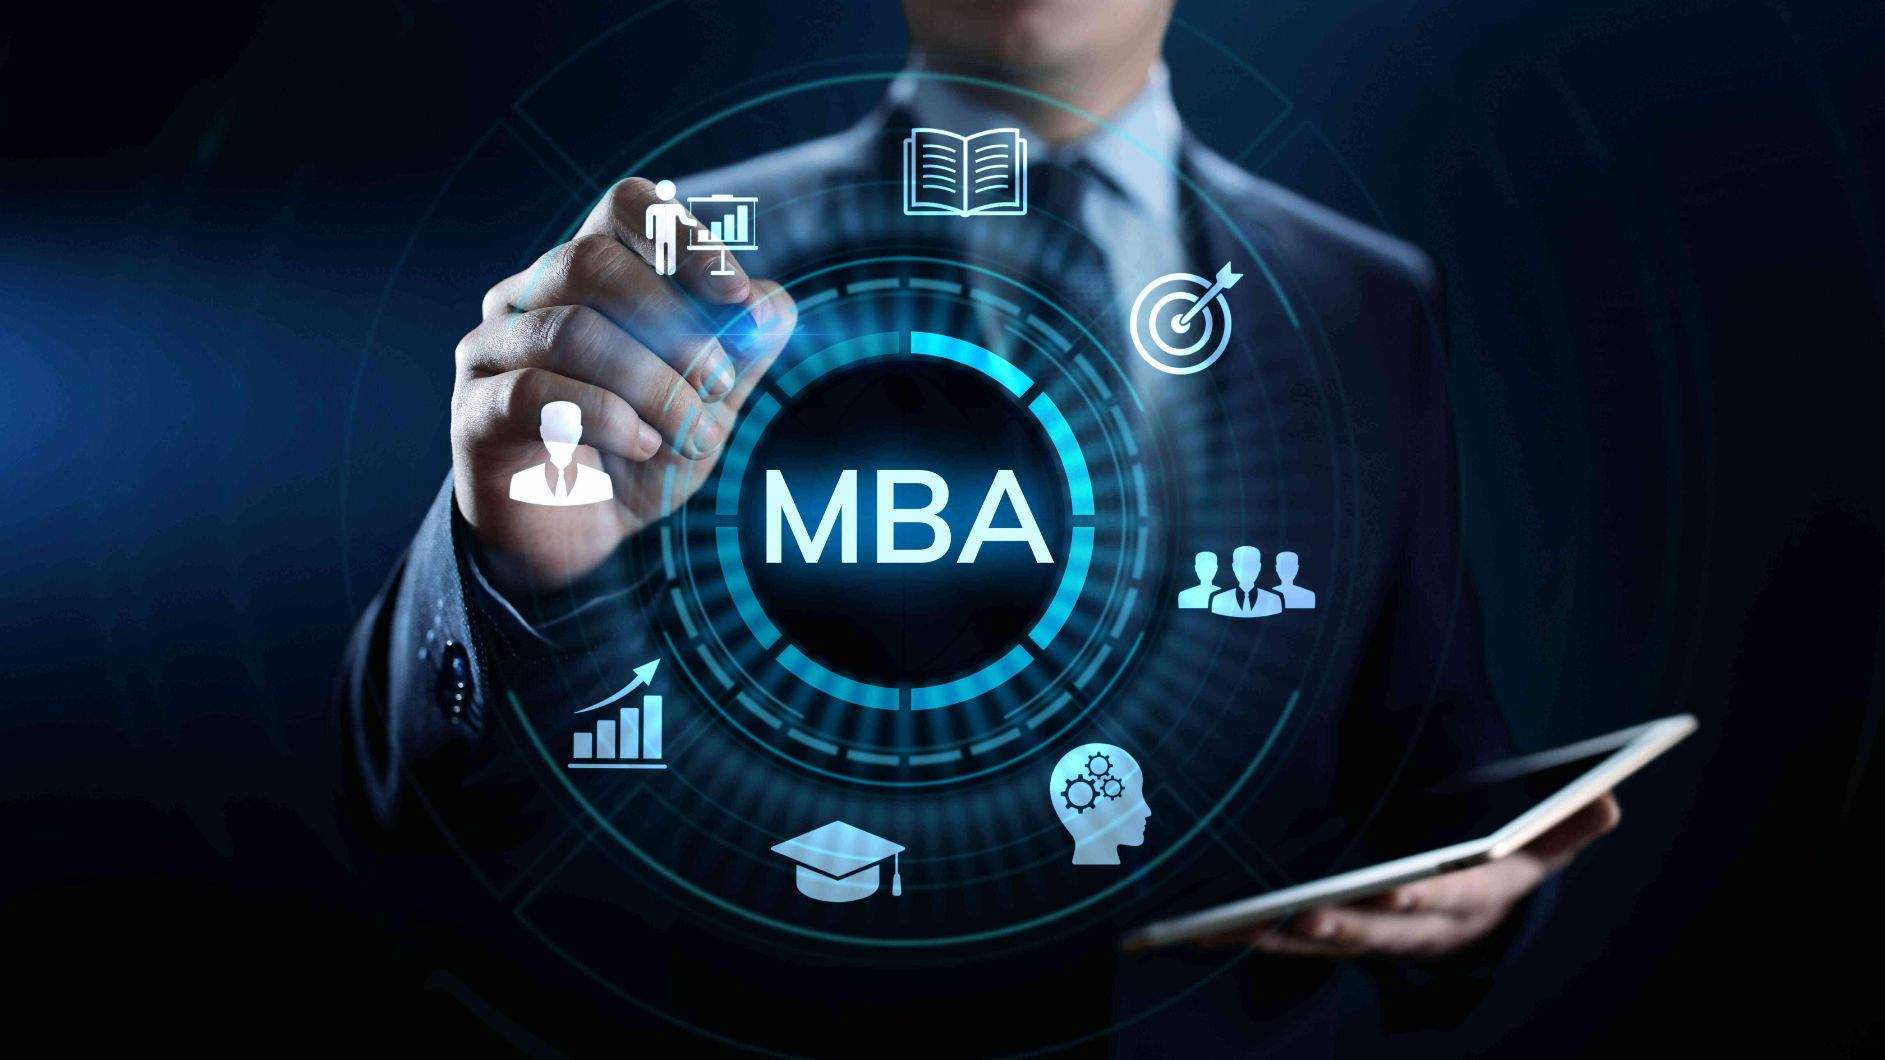 schemat obszarów MBA